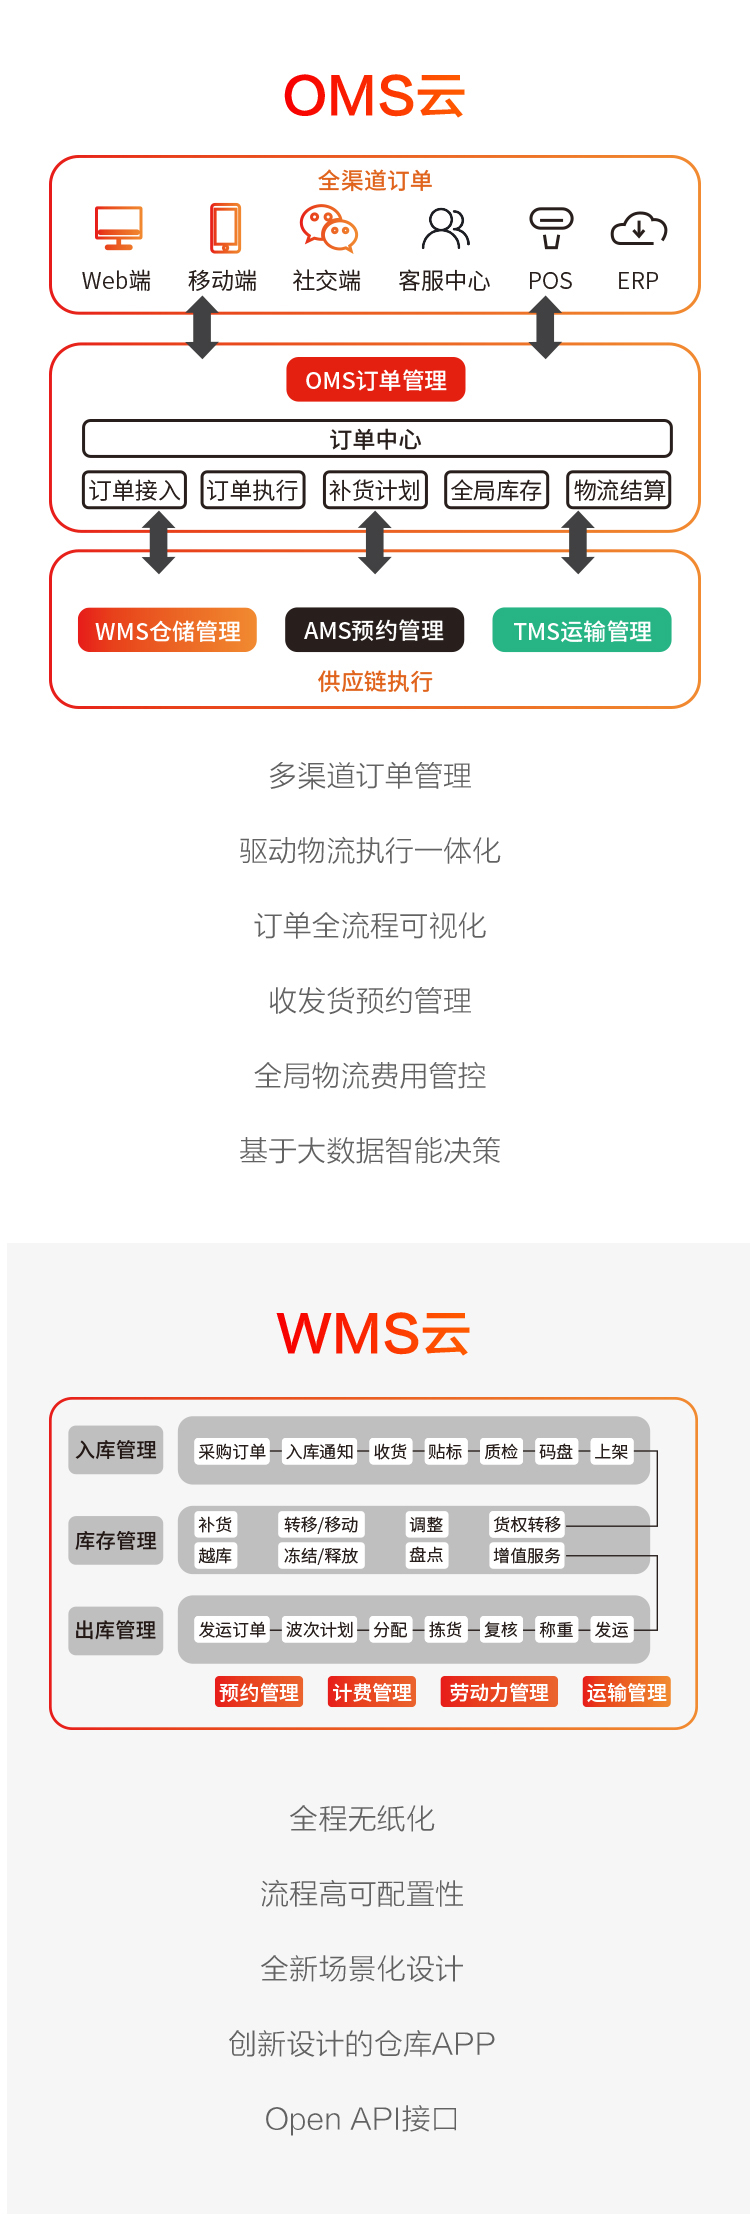 WMSTMS-H5_04.jpg